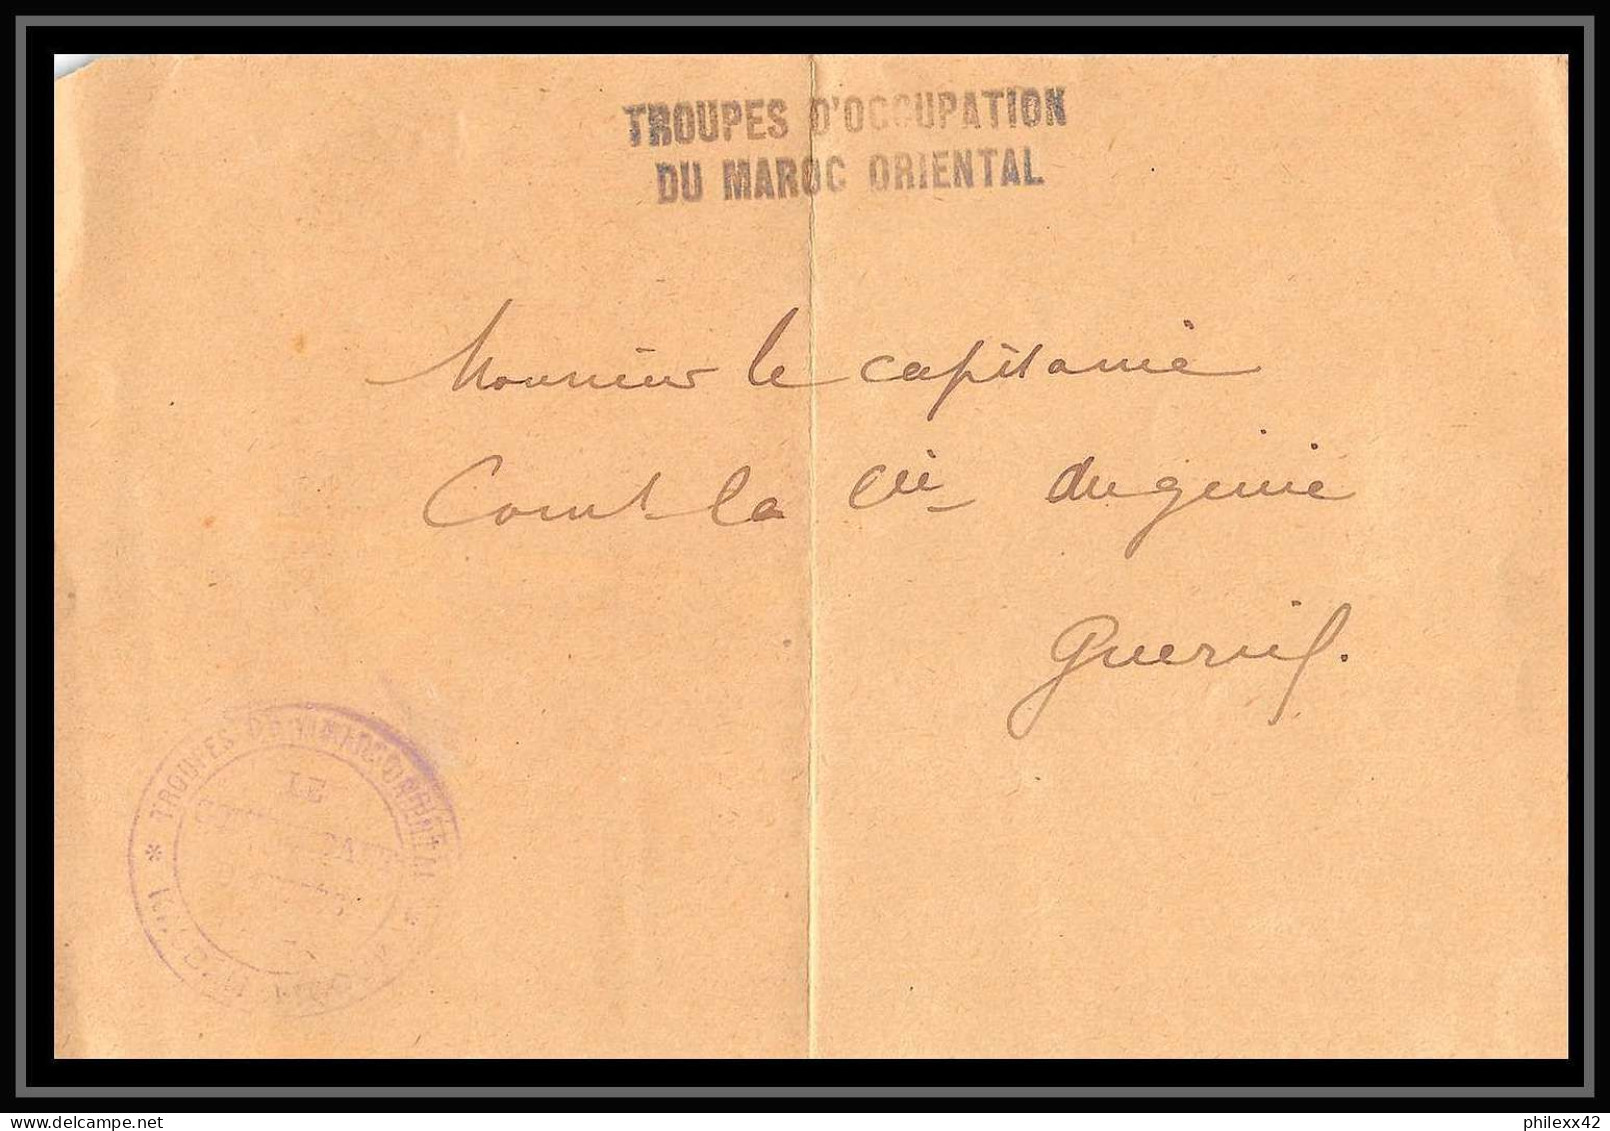 0849 lot 8 lettres Meknès isolés métropolitains el hajeb 1913 Lettre cover occupation du maroc War dont signé